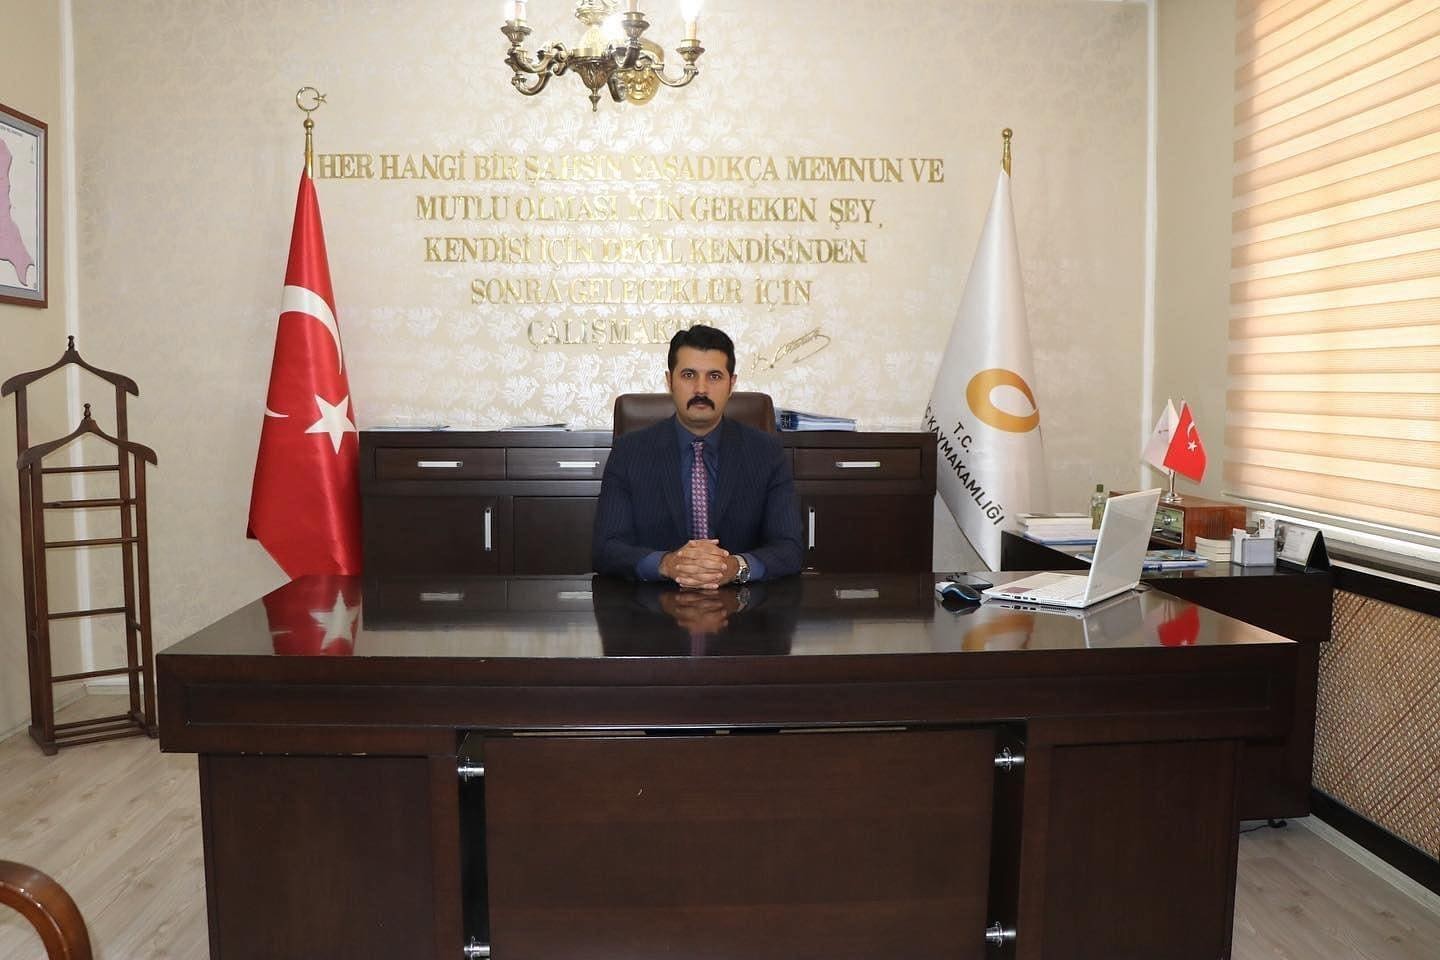 İliç Kaymakamı Bek, Gaziantep vali yardımcılığına atandı #erzincan